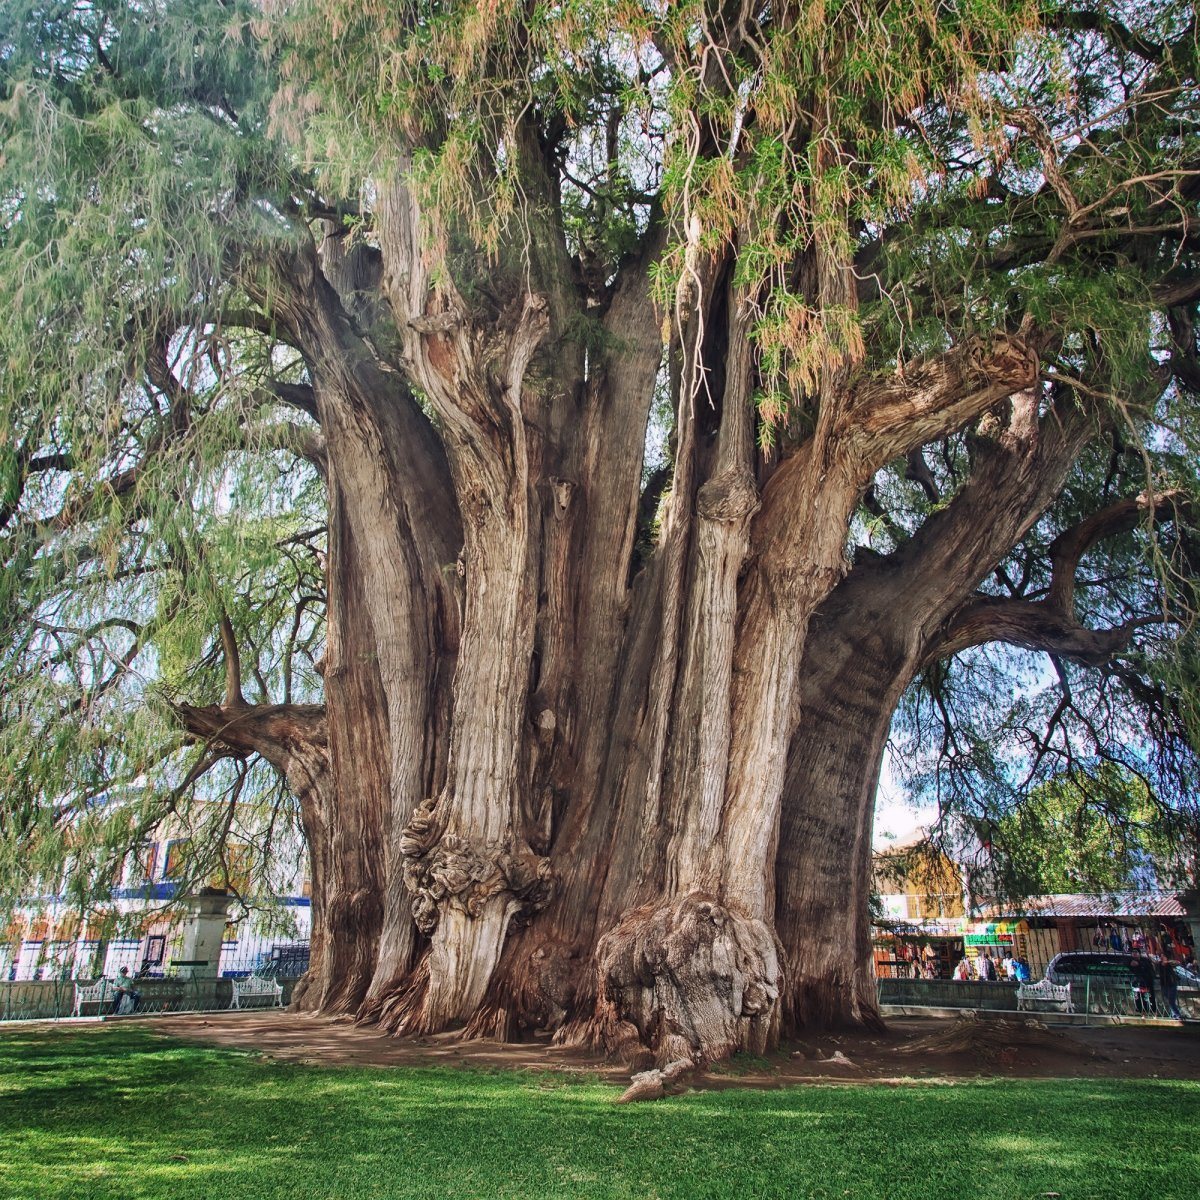 Oaxaca's enormous Tree of Tule